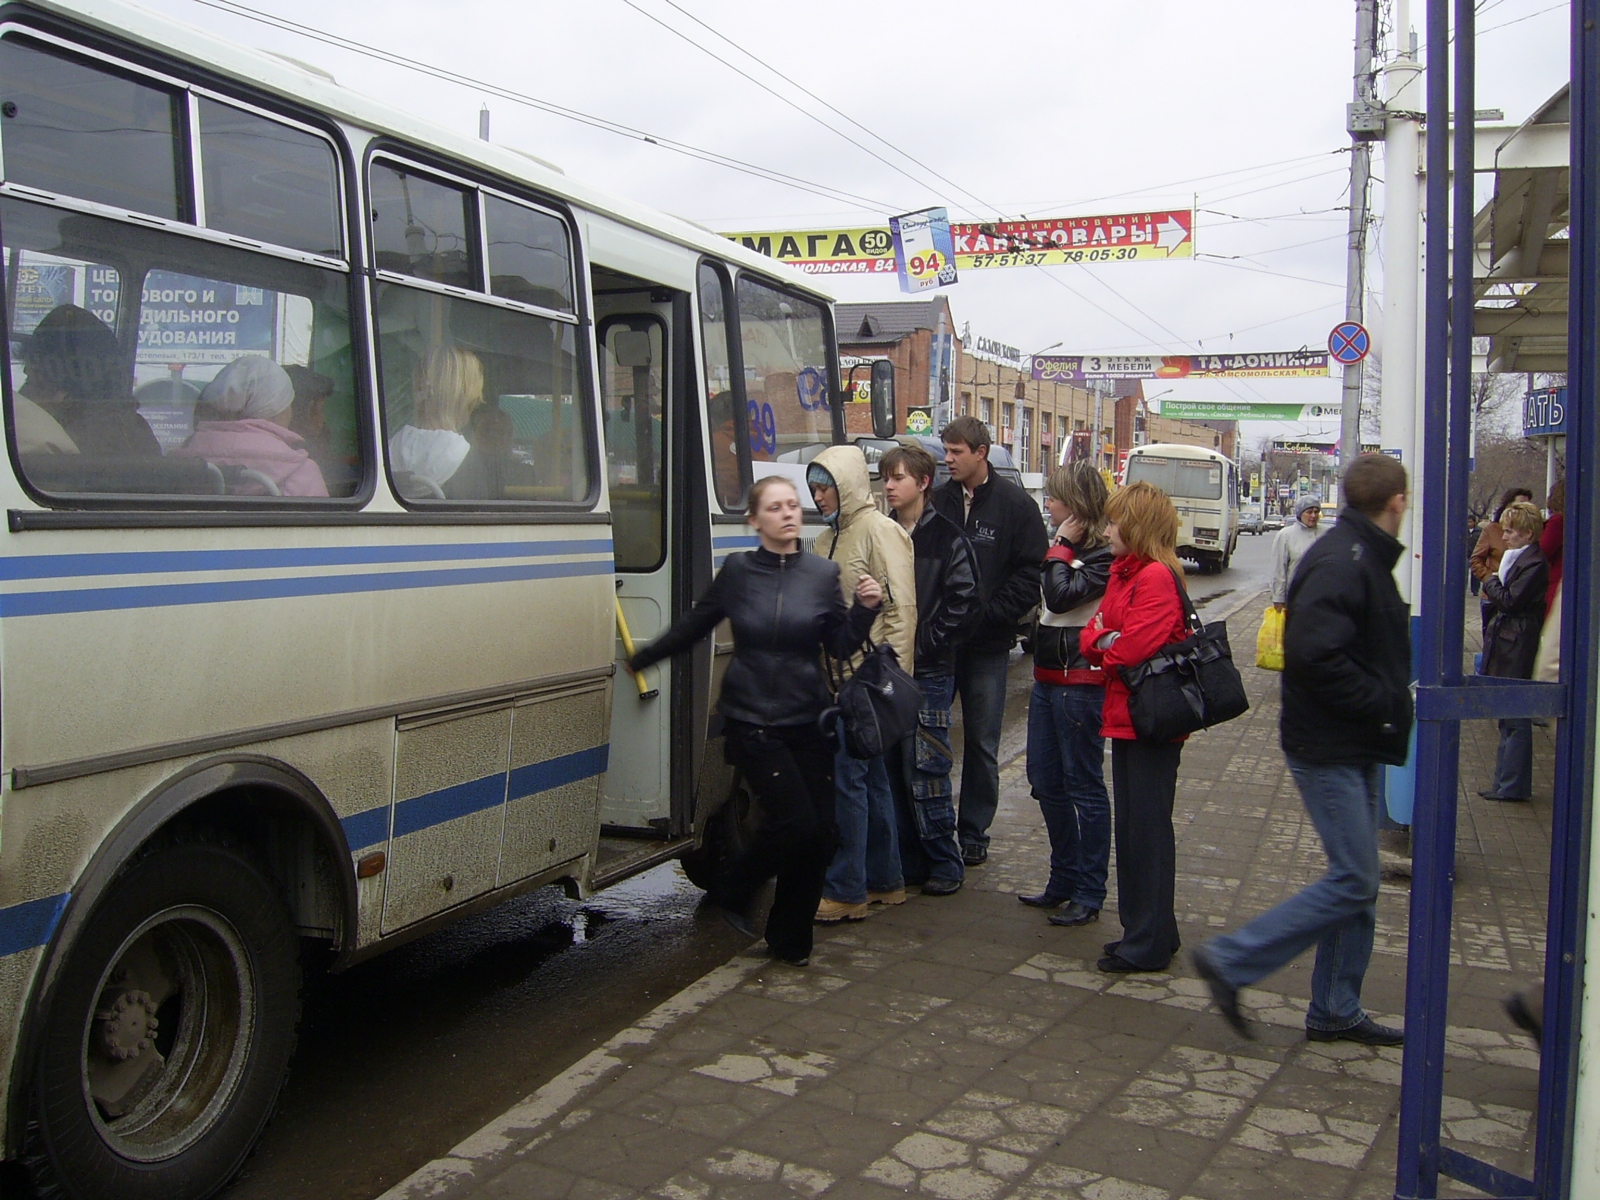 Для оренбургских студентов проезд в общественном транспорте может стать бесплатным